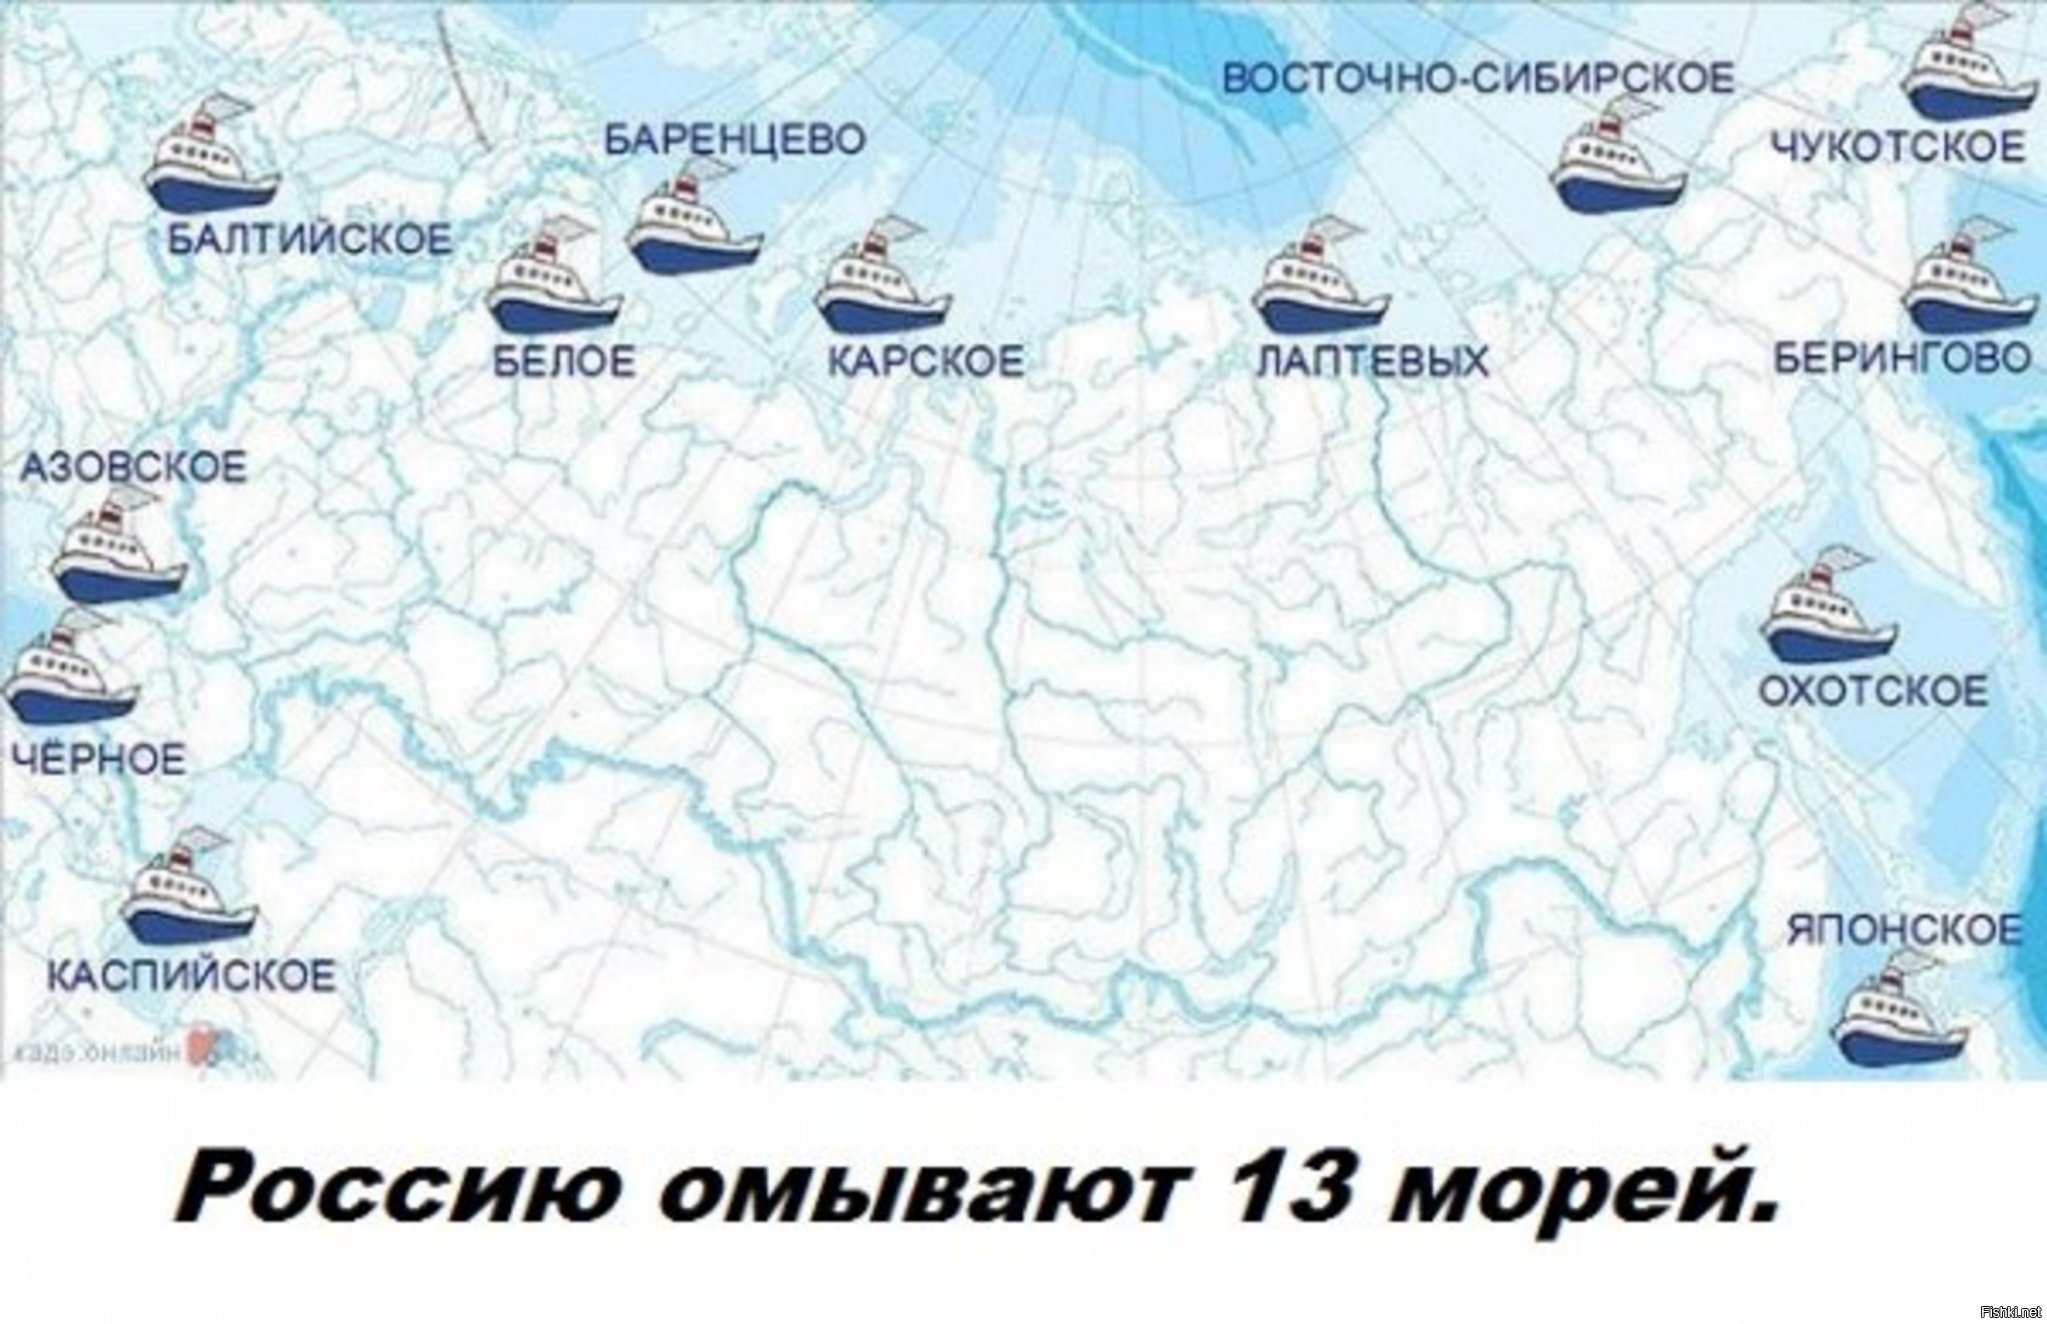 Моря омывающие Россию на карте